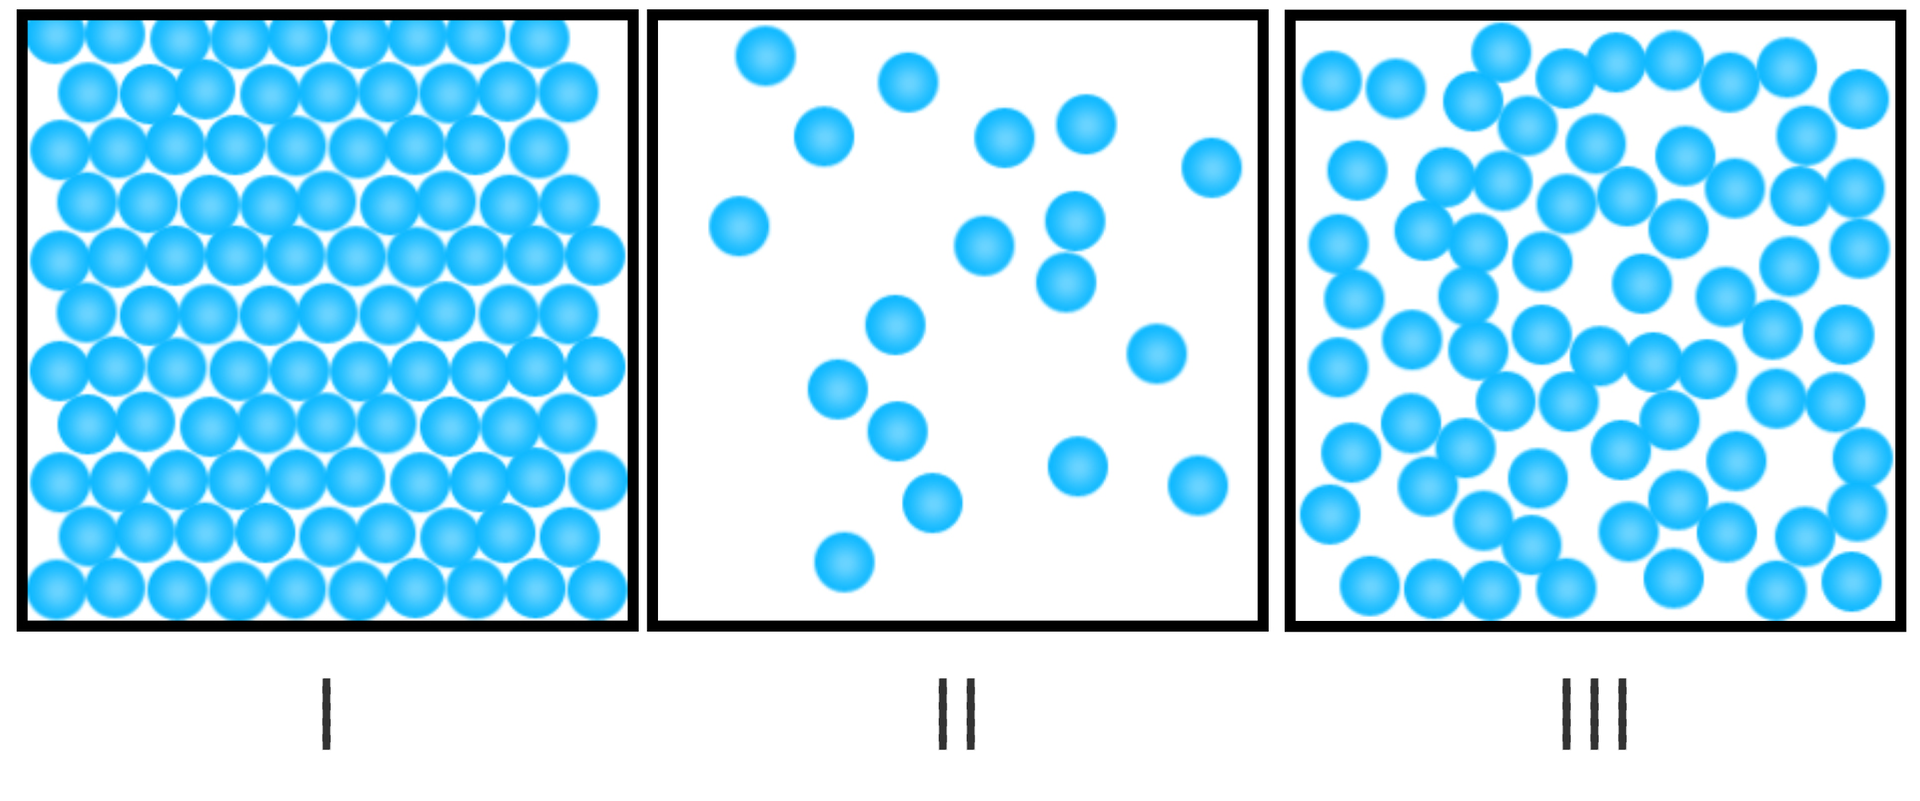 Ilustracja przedstawia schemat układu atomów w ciałach o różnych stanach skupienia. Tło białe. Na ilustracji trzy kwadraty. Czarne kontury, białe wnętrza. Kwadraty ułożone w jednym rzędzie. Ponumerowane cyframi rzymskimi od I do III (od lewej). W każdym znajdują się małe, niebieskie kulki, ale w różnych ilościach. W pierwszym kulki wypełniają całe wnętrze kwadratu, leżą ciasno ułożone. W drugim jest jedynie kilka kulek, leżą rozrzucone na całej powierzchni kwadratu. W trzecim kulek jest kilkadziesiąt. Zajmują całą powierzchnię, jednak nie leżą tak ciasno, jak w kwadracie I.